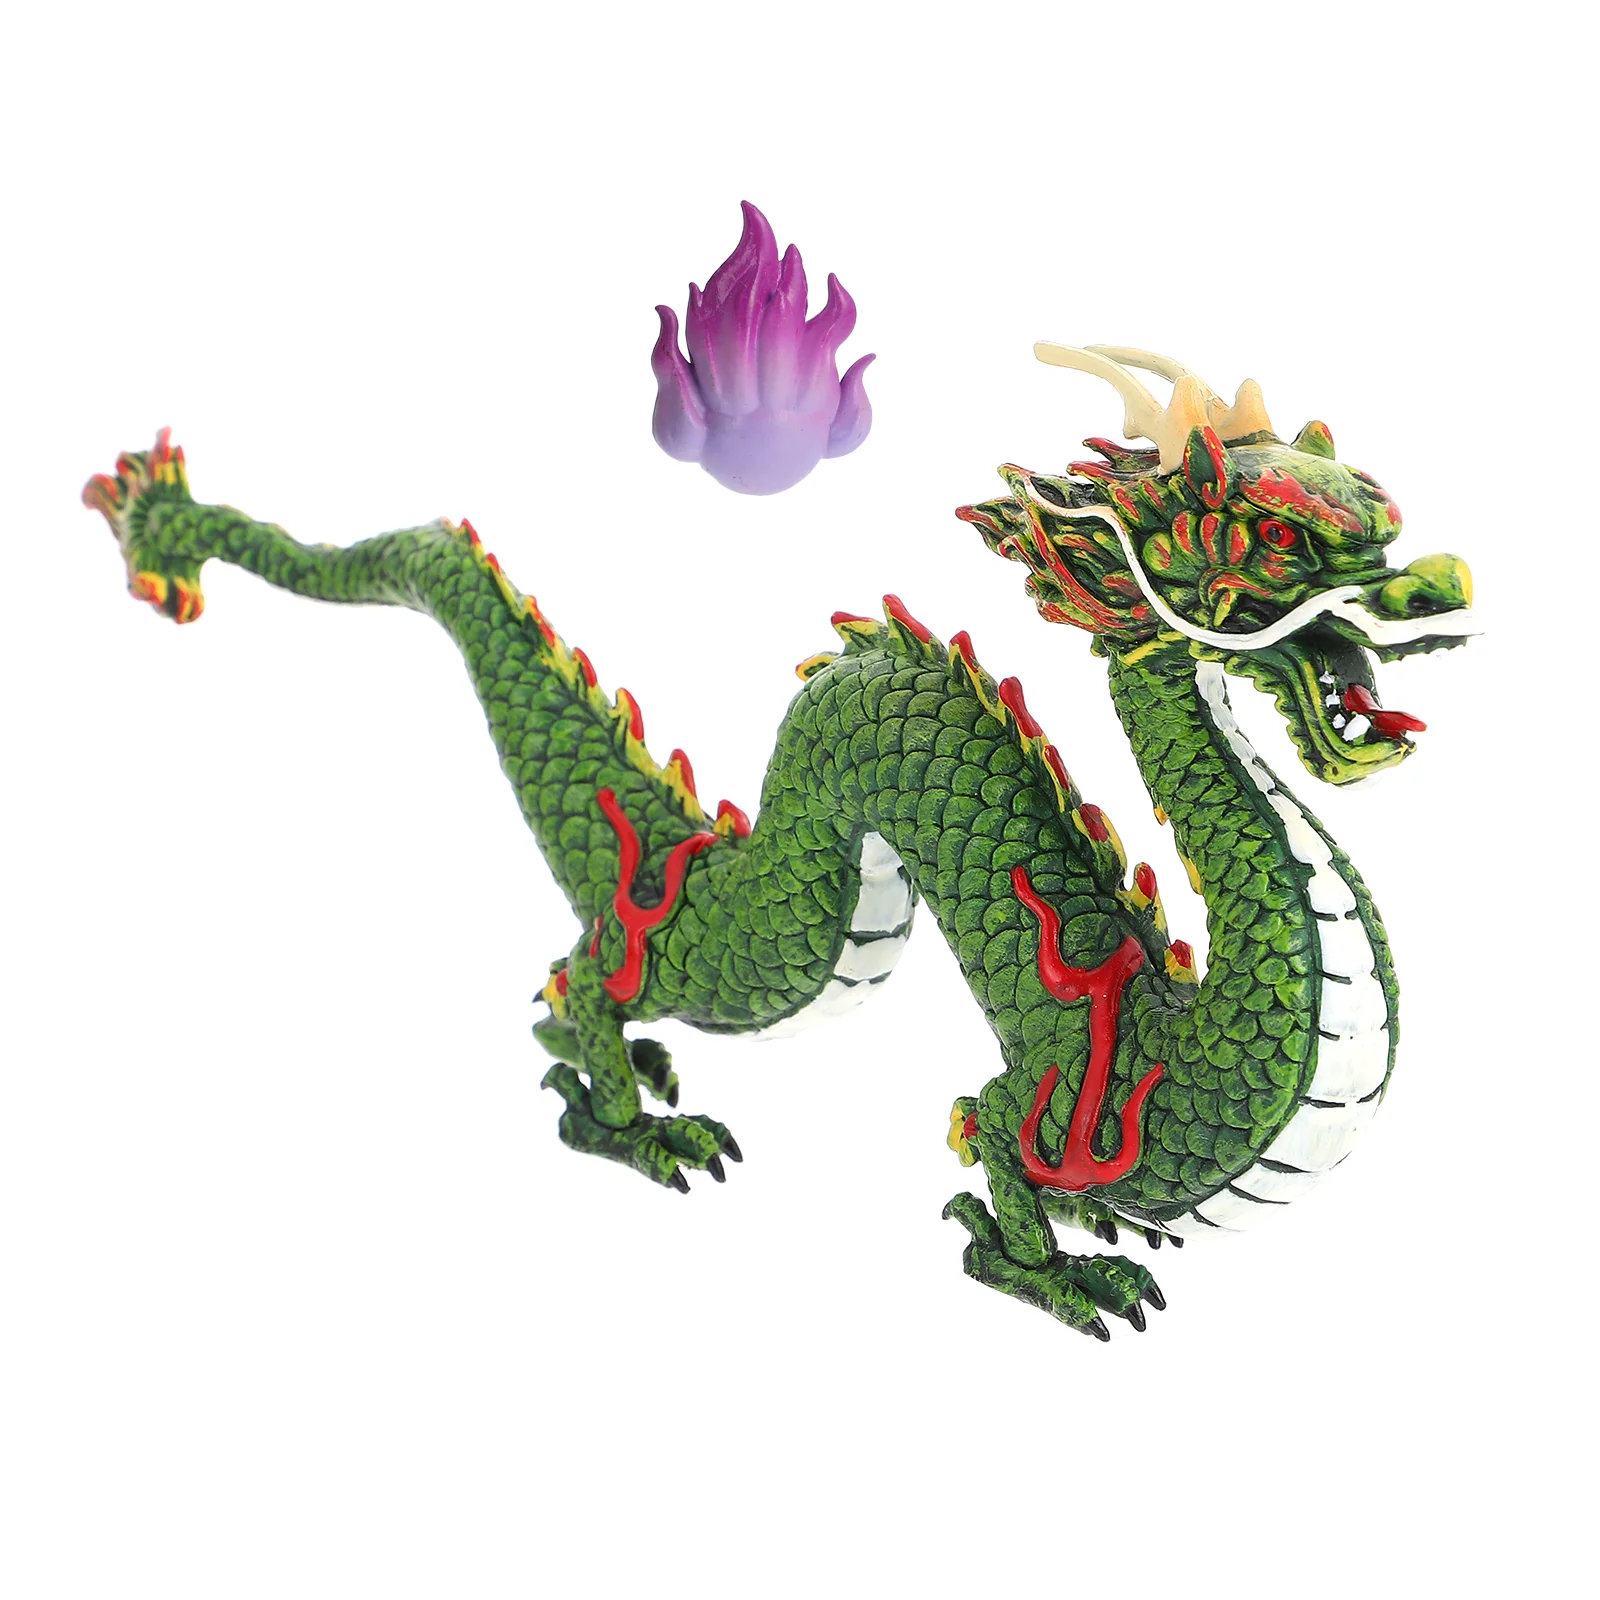 

Oriental Dragon Toy Household Adornment Decorative Model Statue Plastic Artware Child